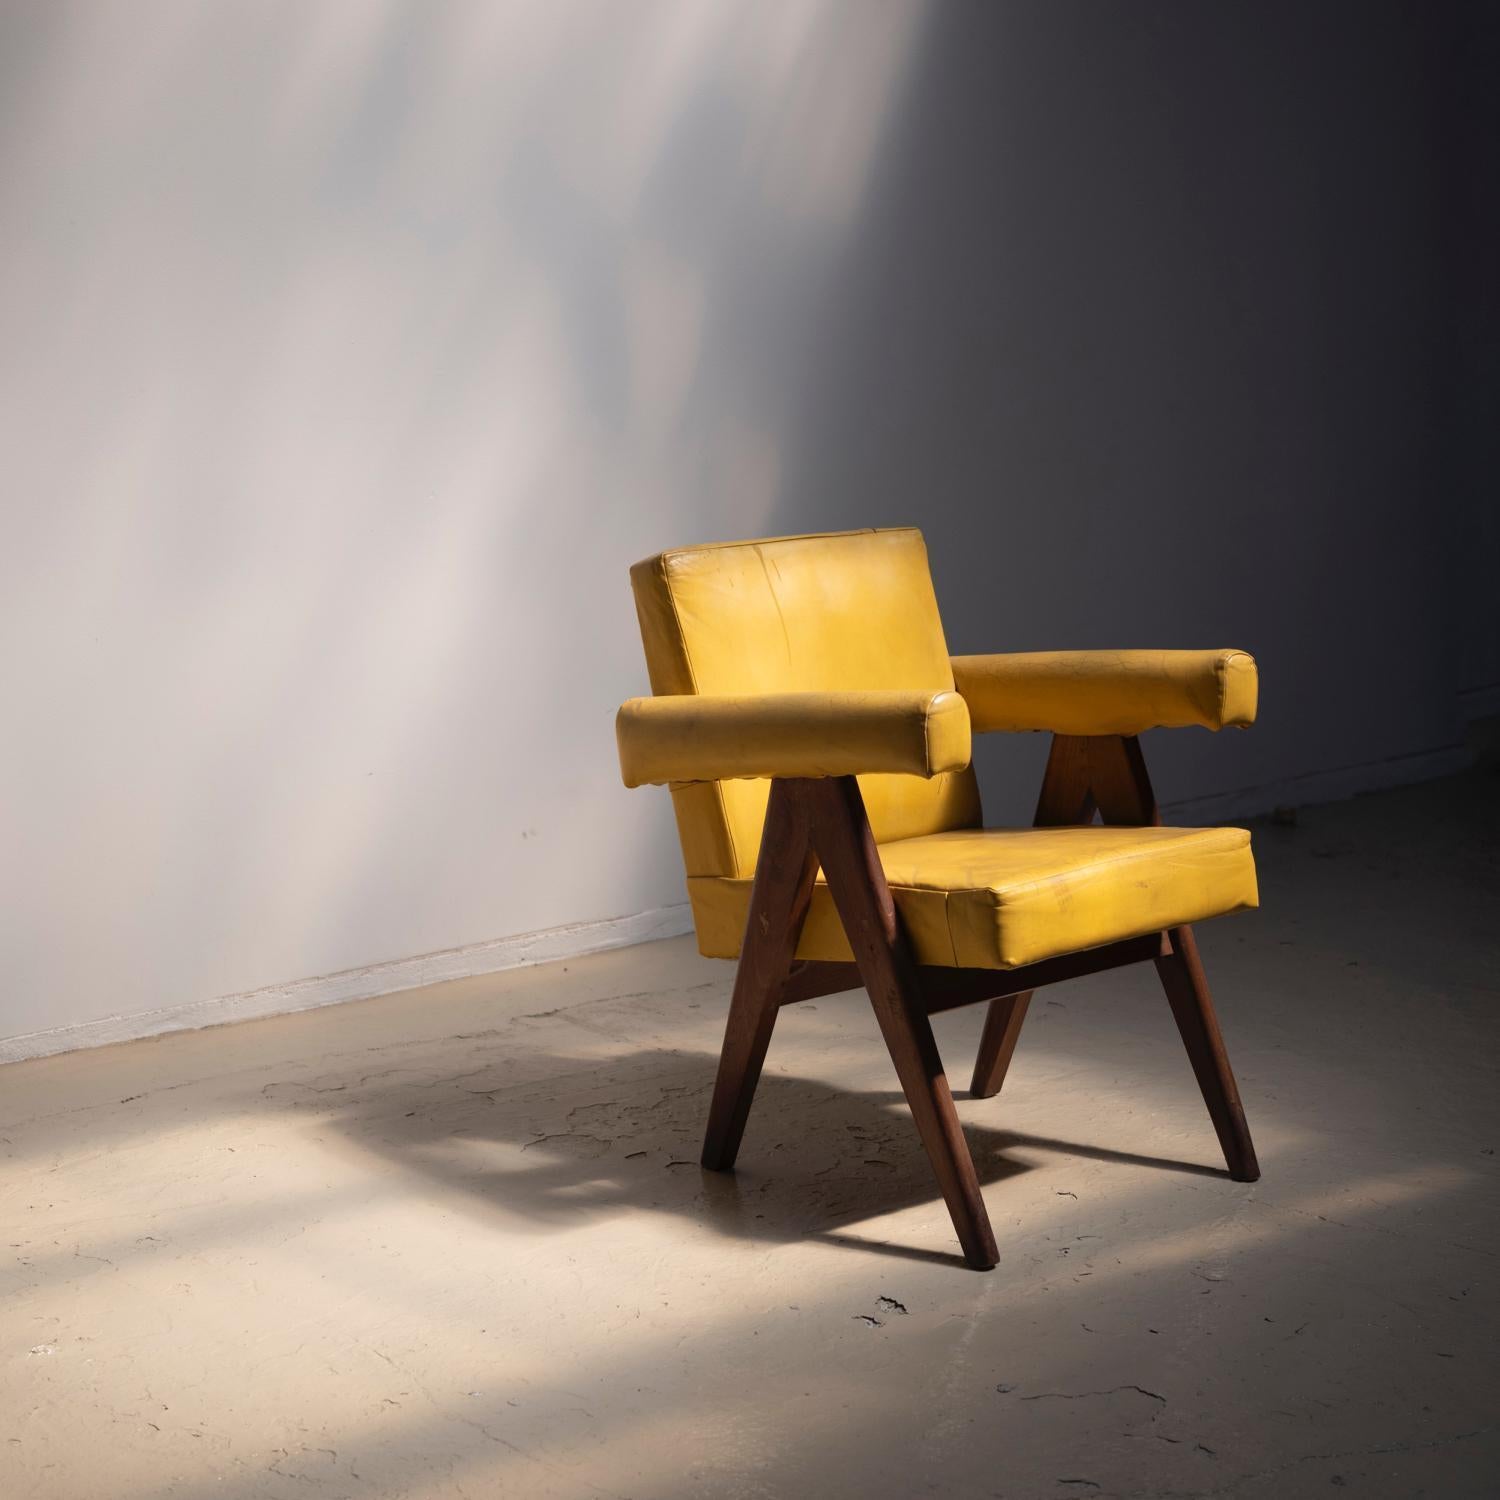 Une chaise de comité conçue par Pierre Jeanneret pour le projet Chandigarh.
Il s'agit d'un fauteuil semi-facile dont l'assise est plus basse que les fauteuils souvent appelés 